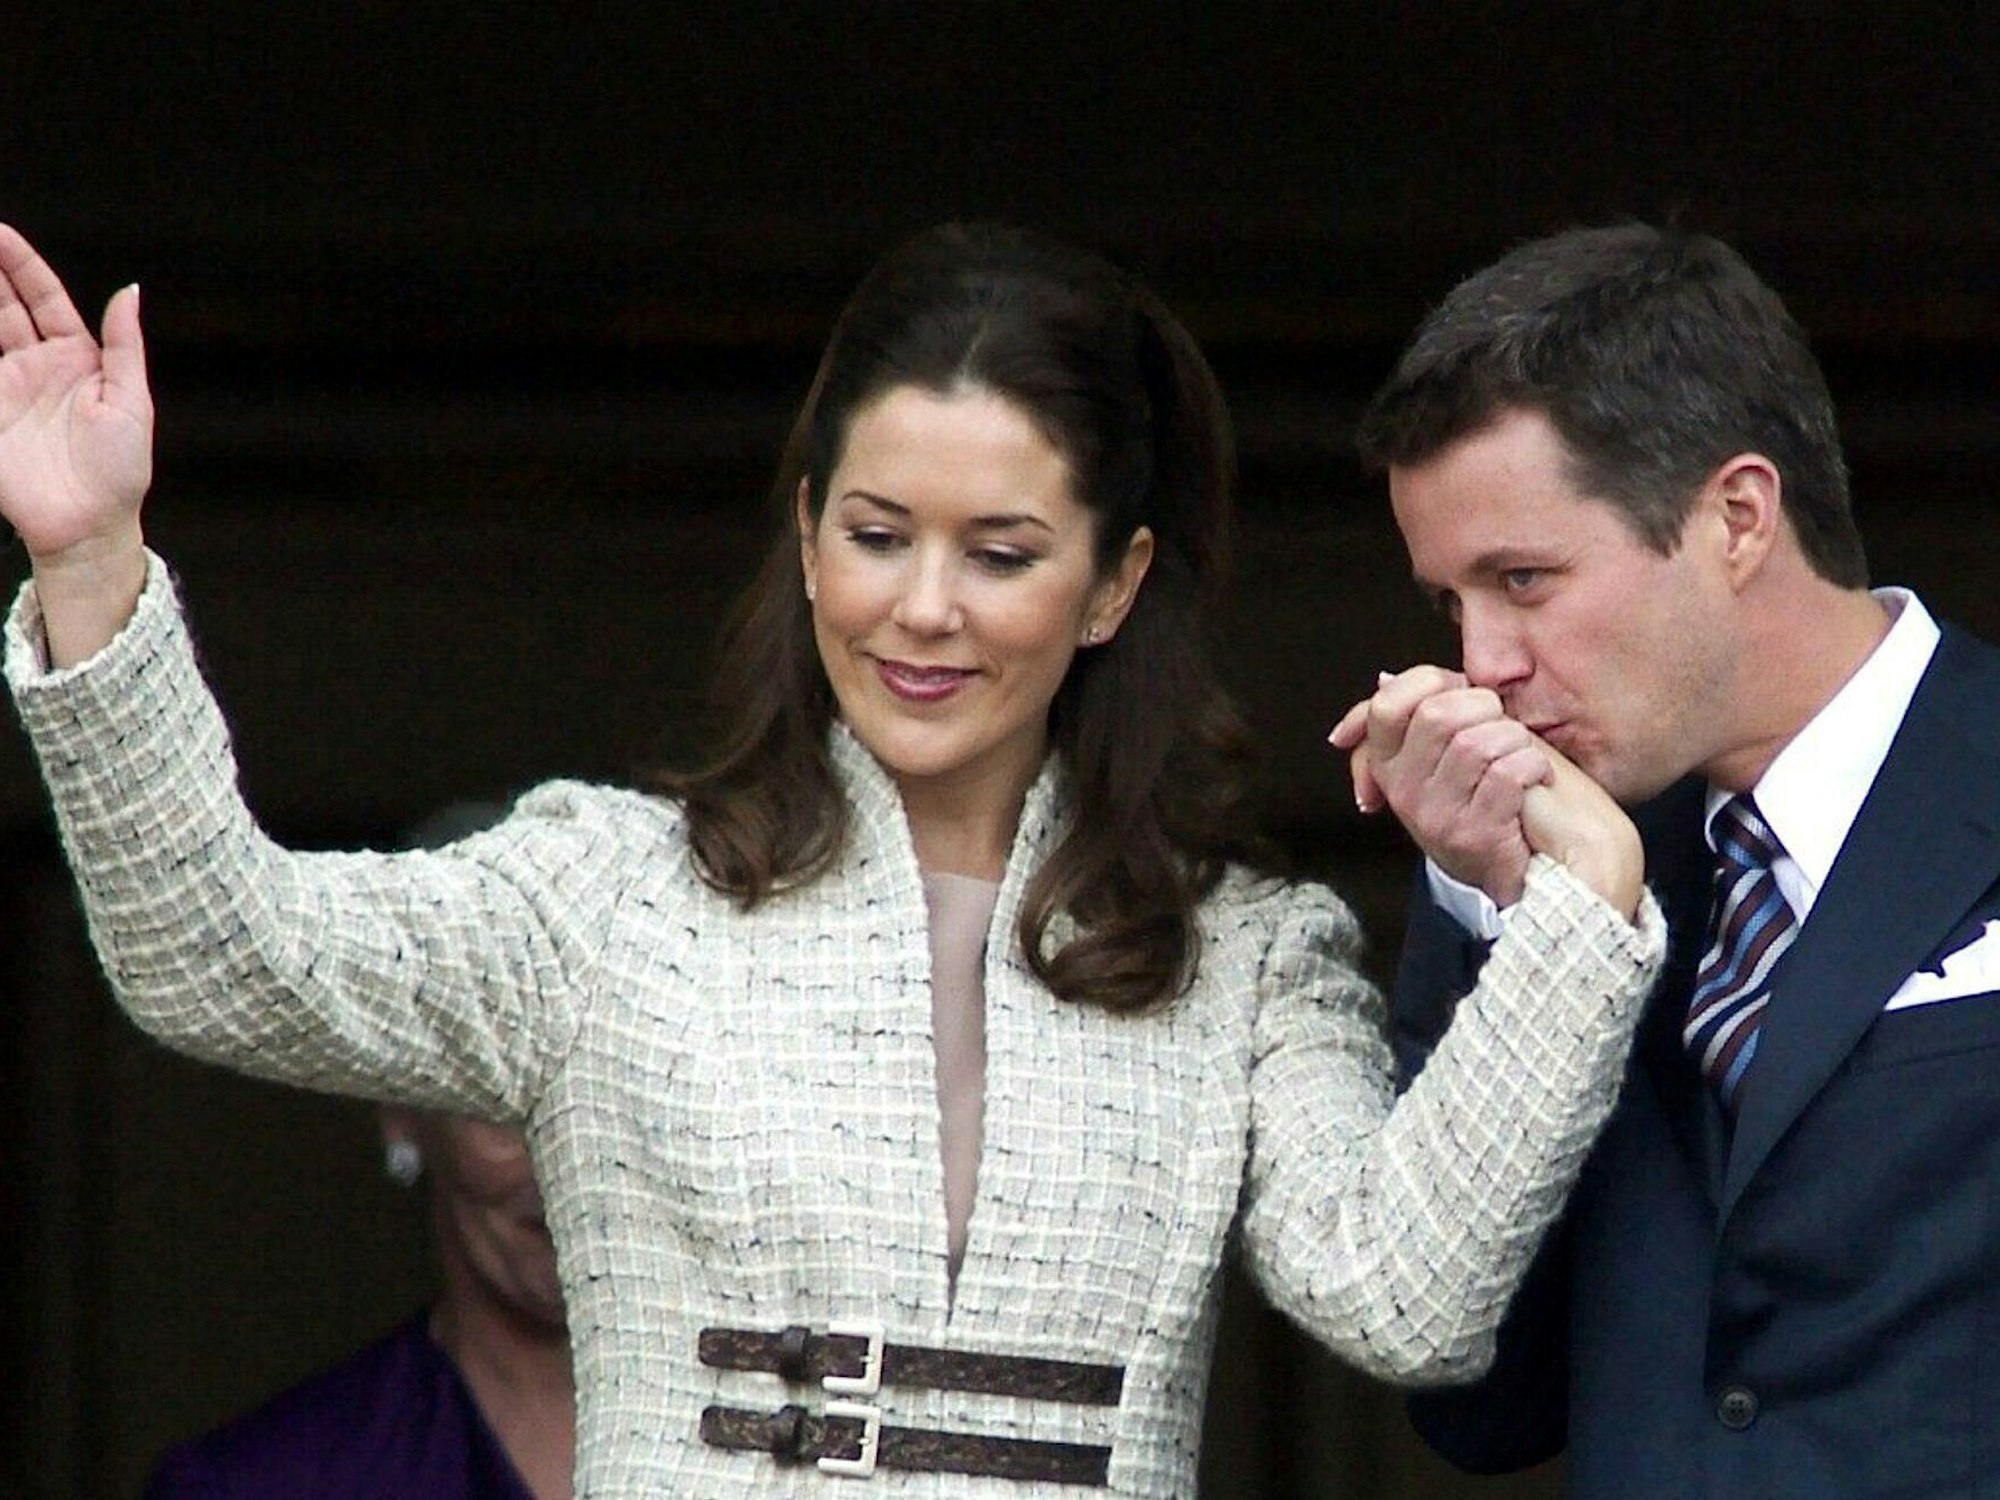 Sieg für die Liebe: Im Oktober 2003 gab Kronprinz Frederik von Dänemark seine Verlobung mit Mary Donaldson bekannt. Auf dem Balkon von Schloss Amalienborg in Kopenhagen zeigte sich das Paar dann erstmals offiziell zusammen.